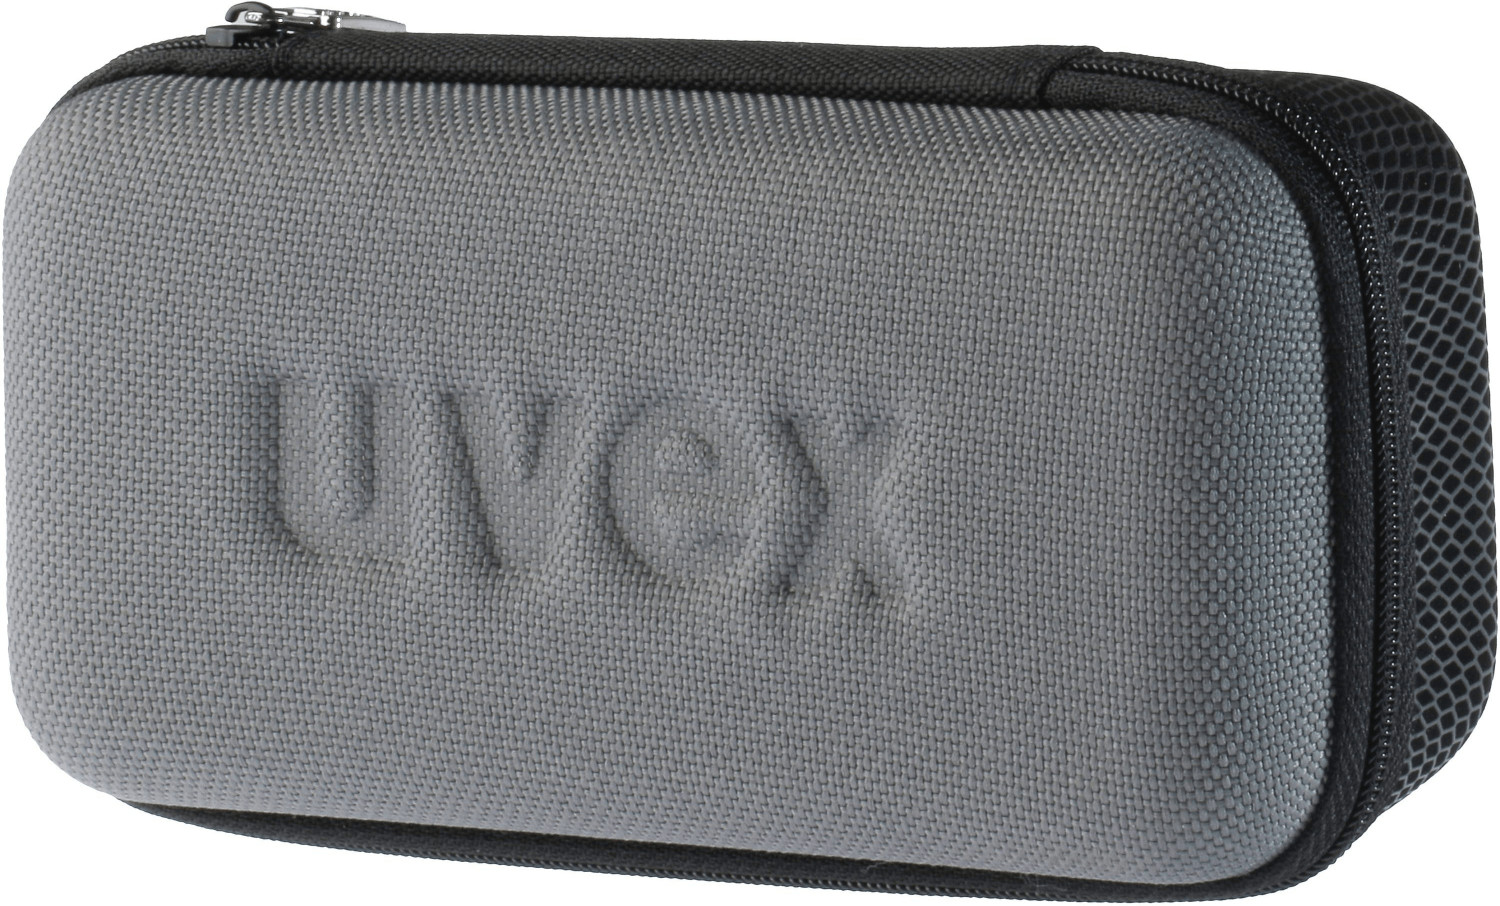 uvex Sportstyle 810 vm (black white)